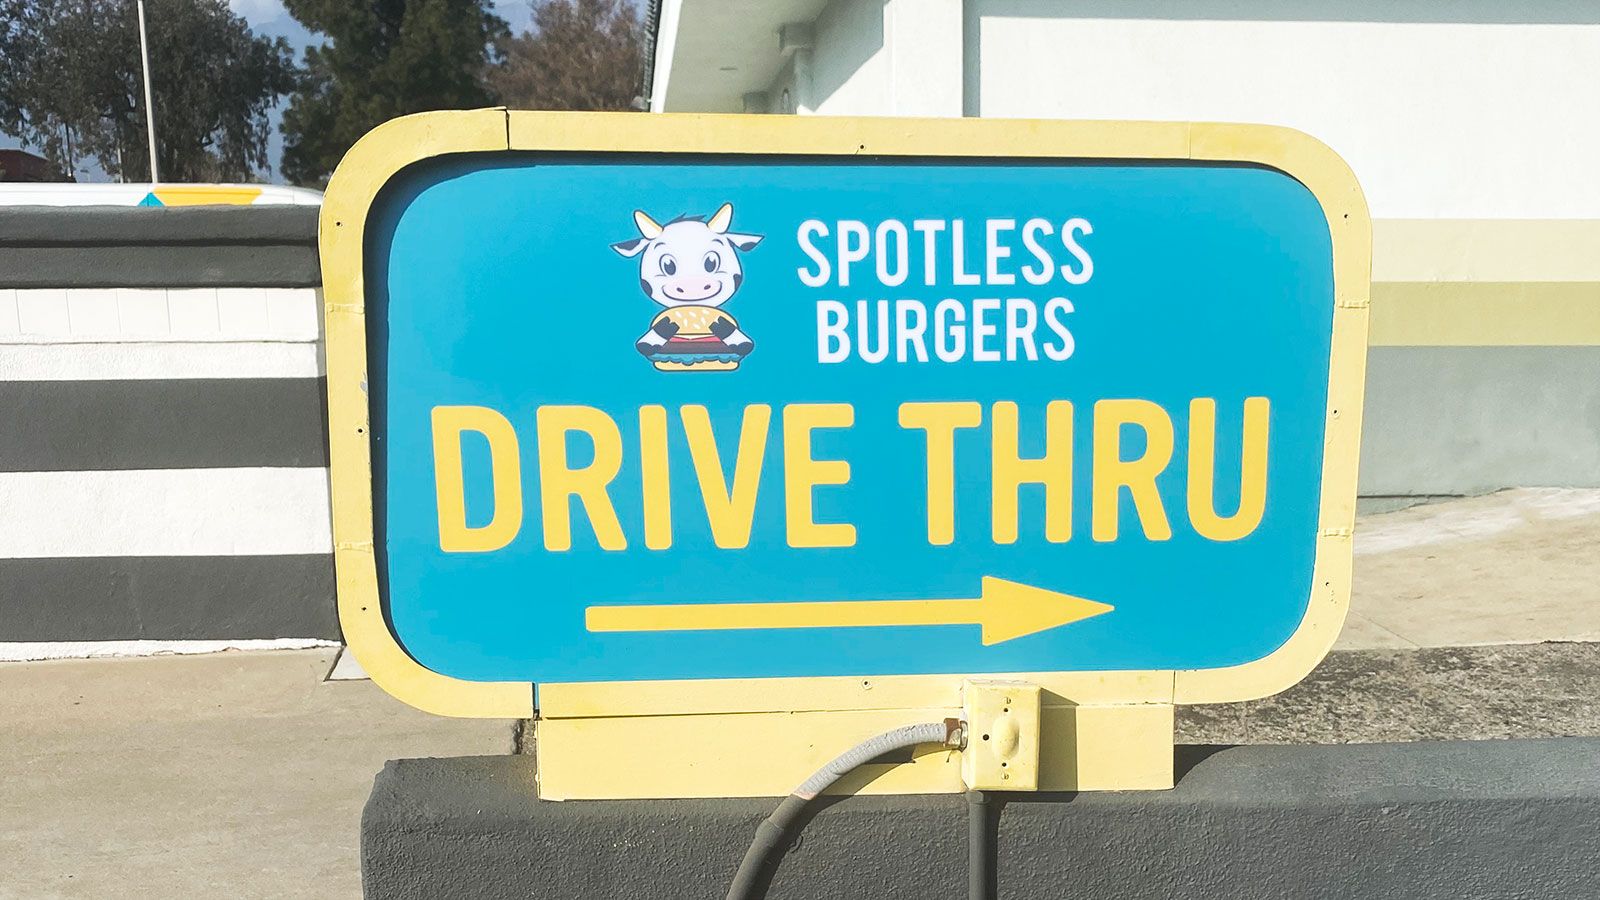 Spotless burgers directional sign